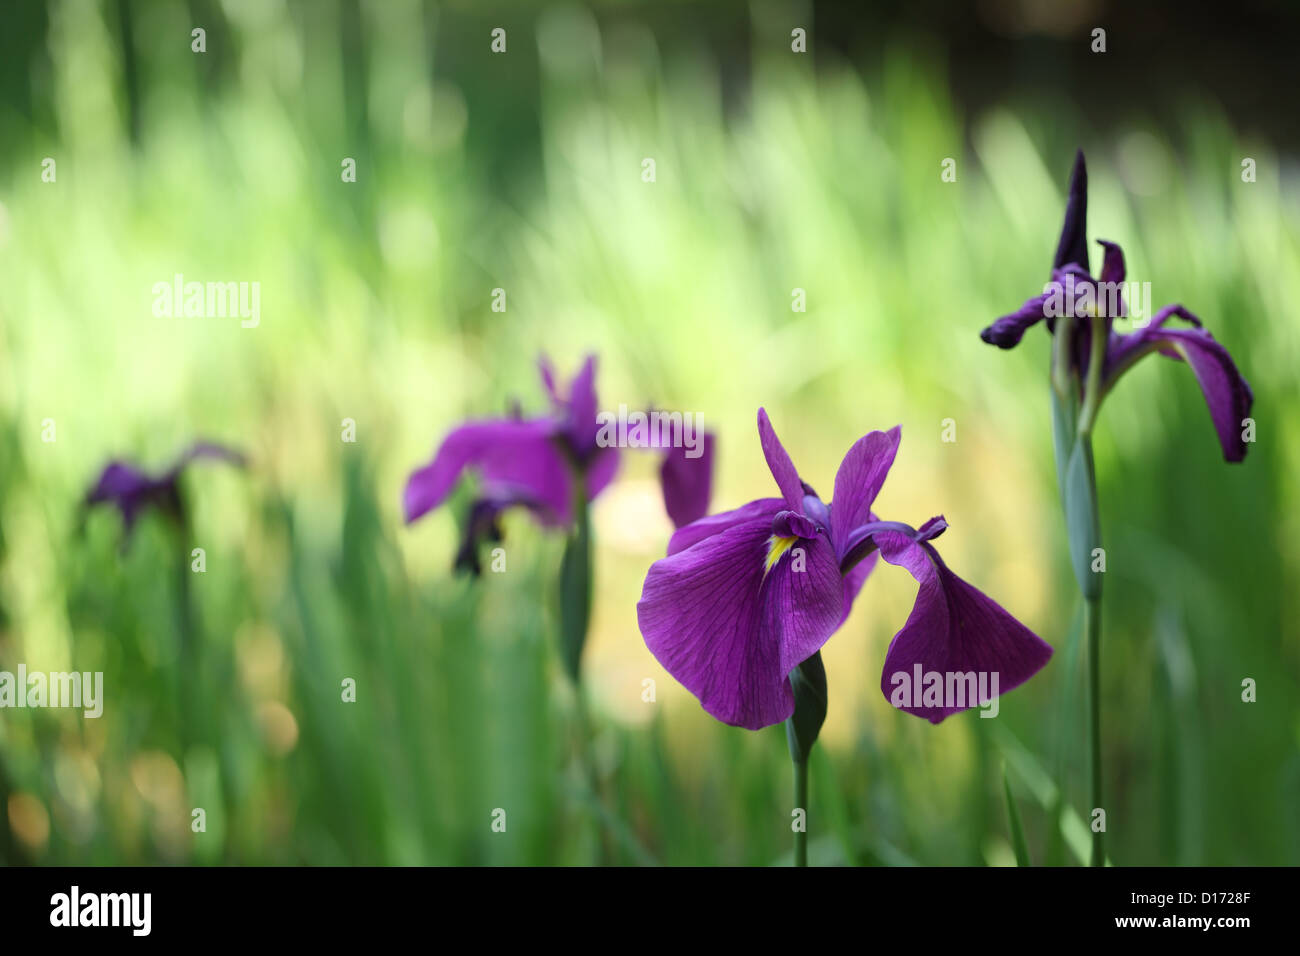 Japanese Iris flowers Stock Photo